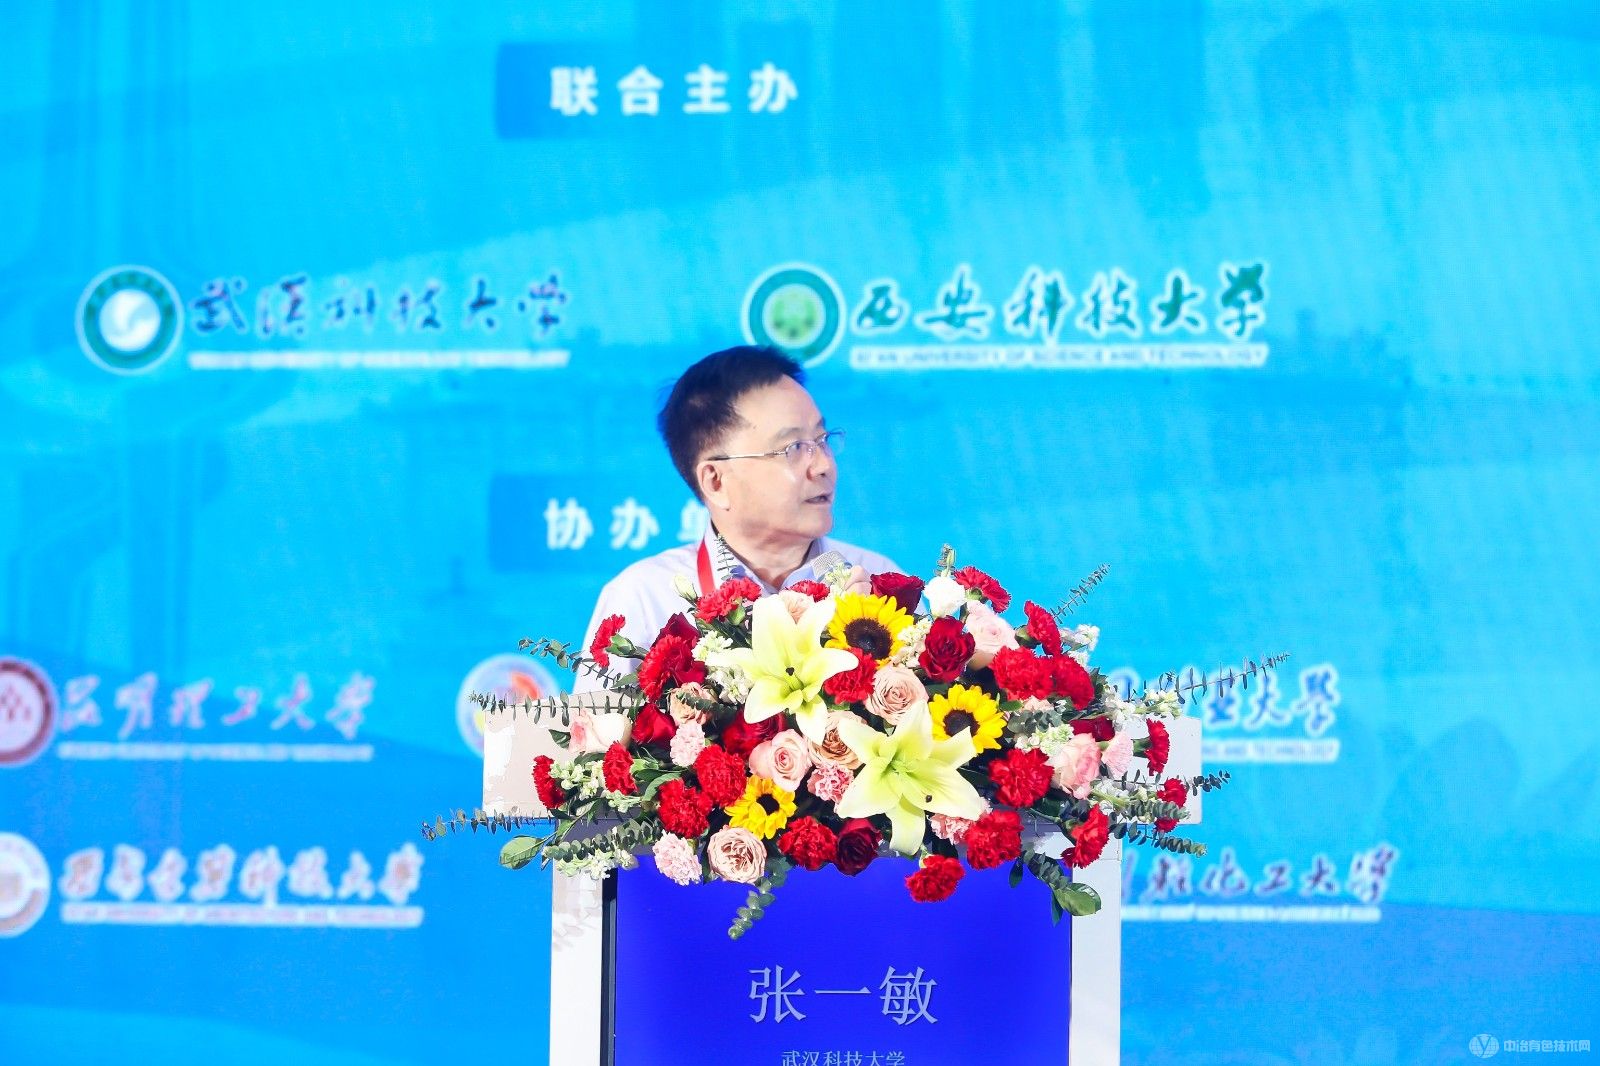 第五届中国浮选大会 现场照片